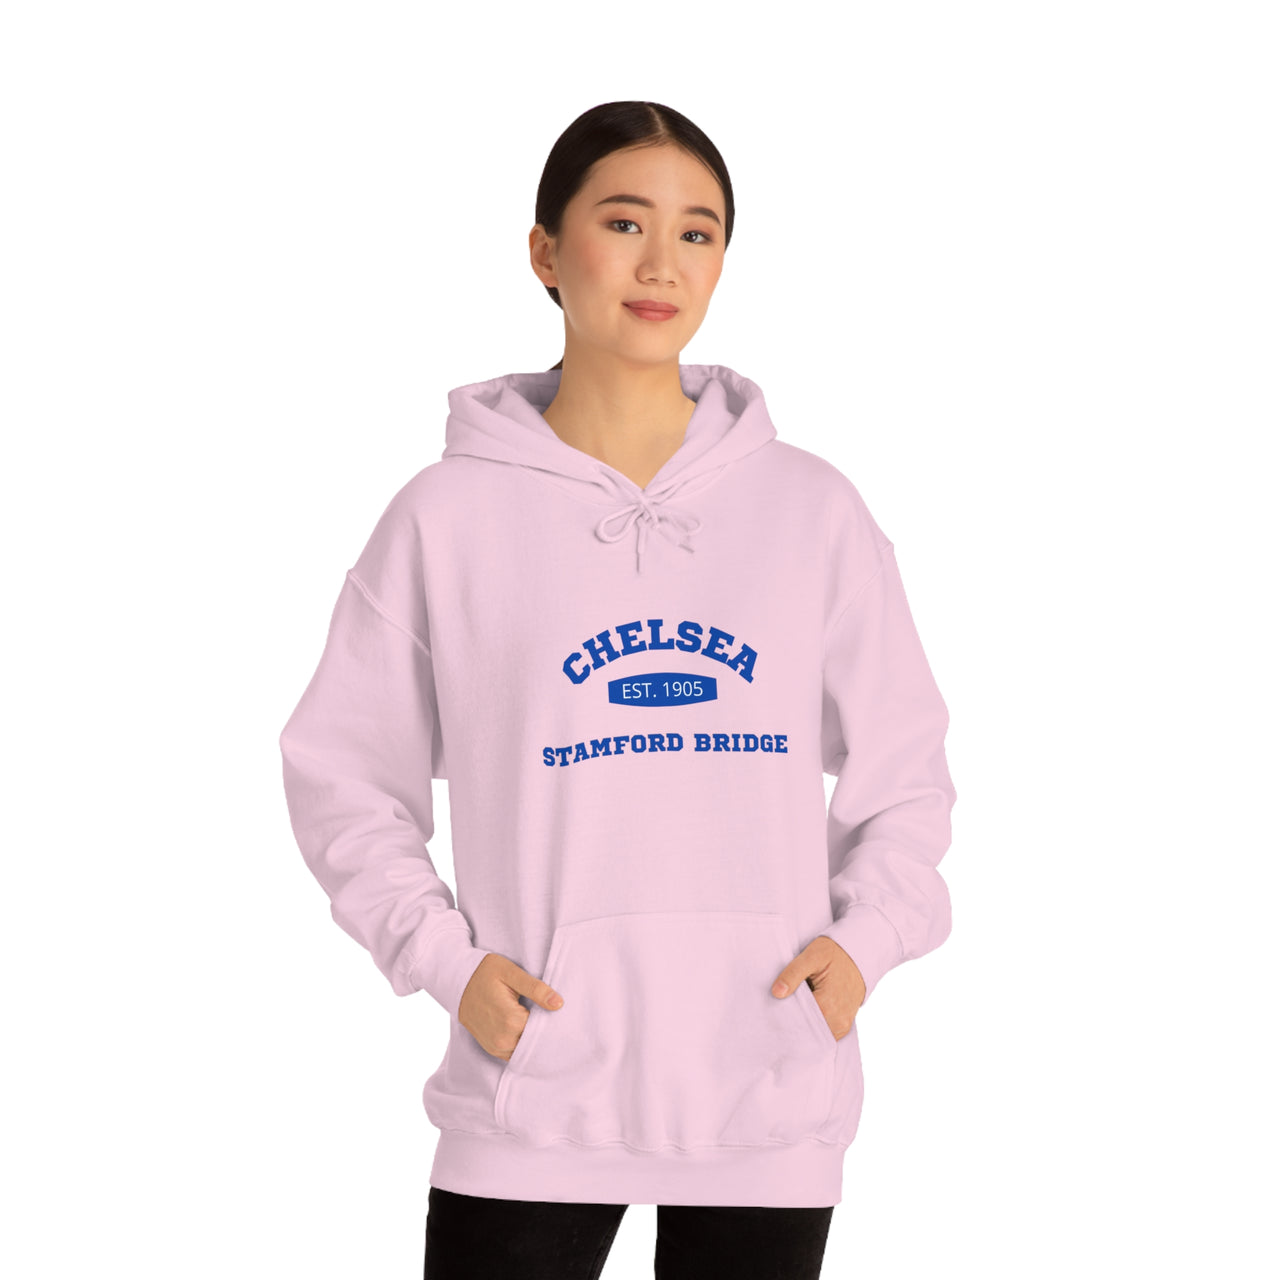 Chelsea Unisex Hooded Sweatshirt